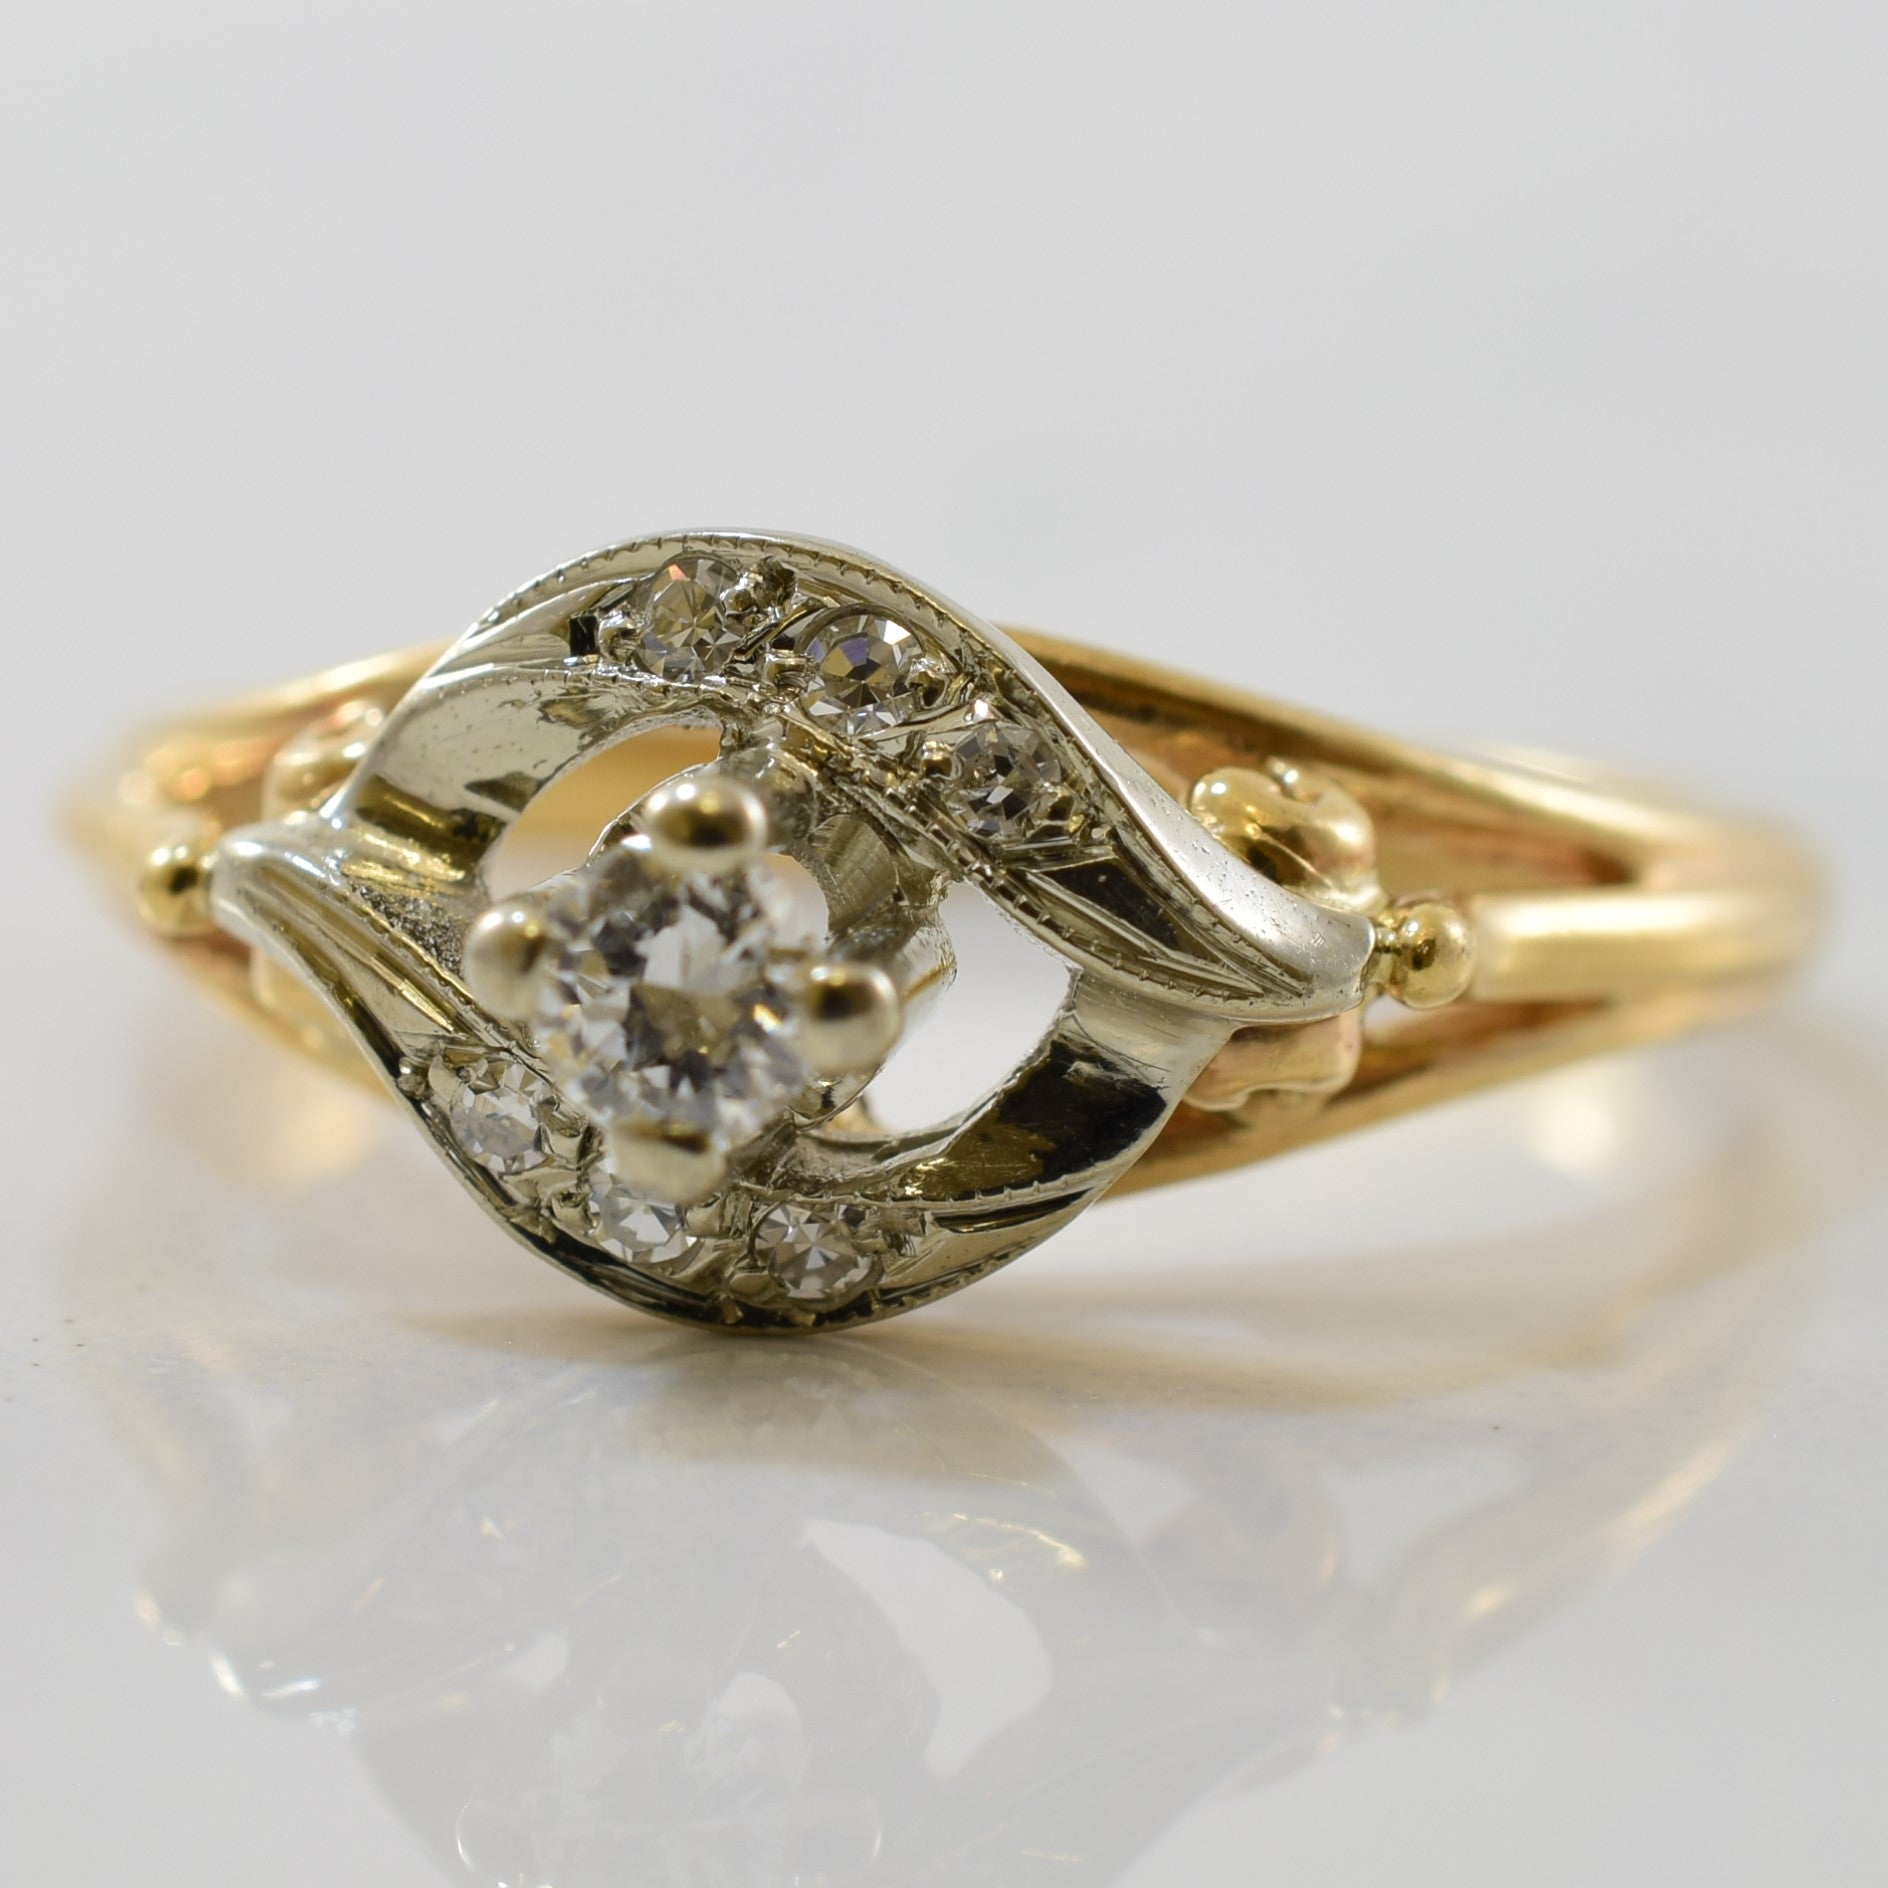 1940s Diamond Bypass Ring | 0.15 ctw | SZ 6.75 |